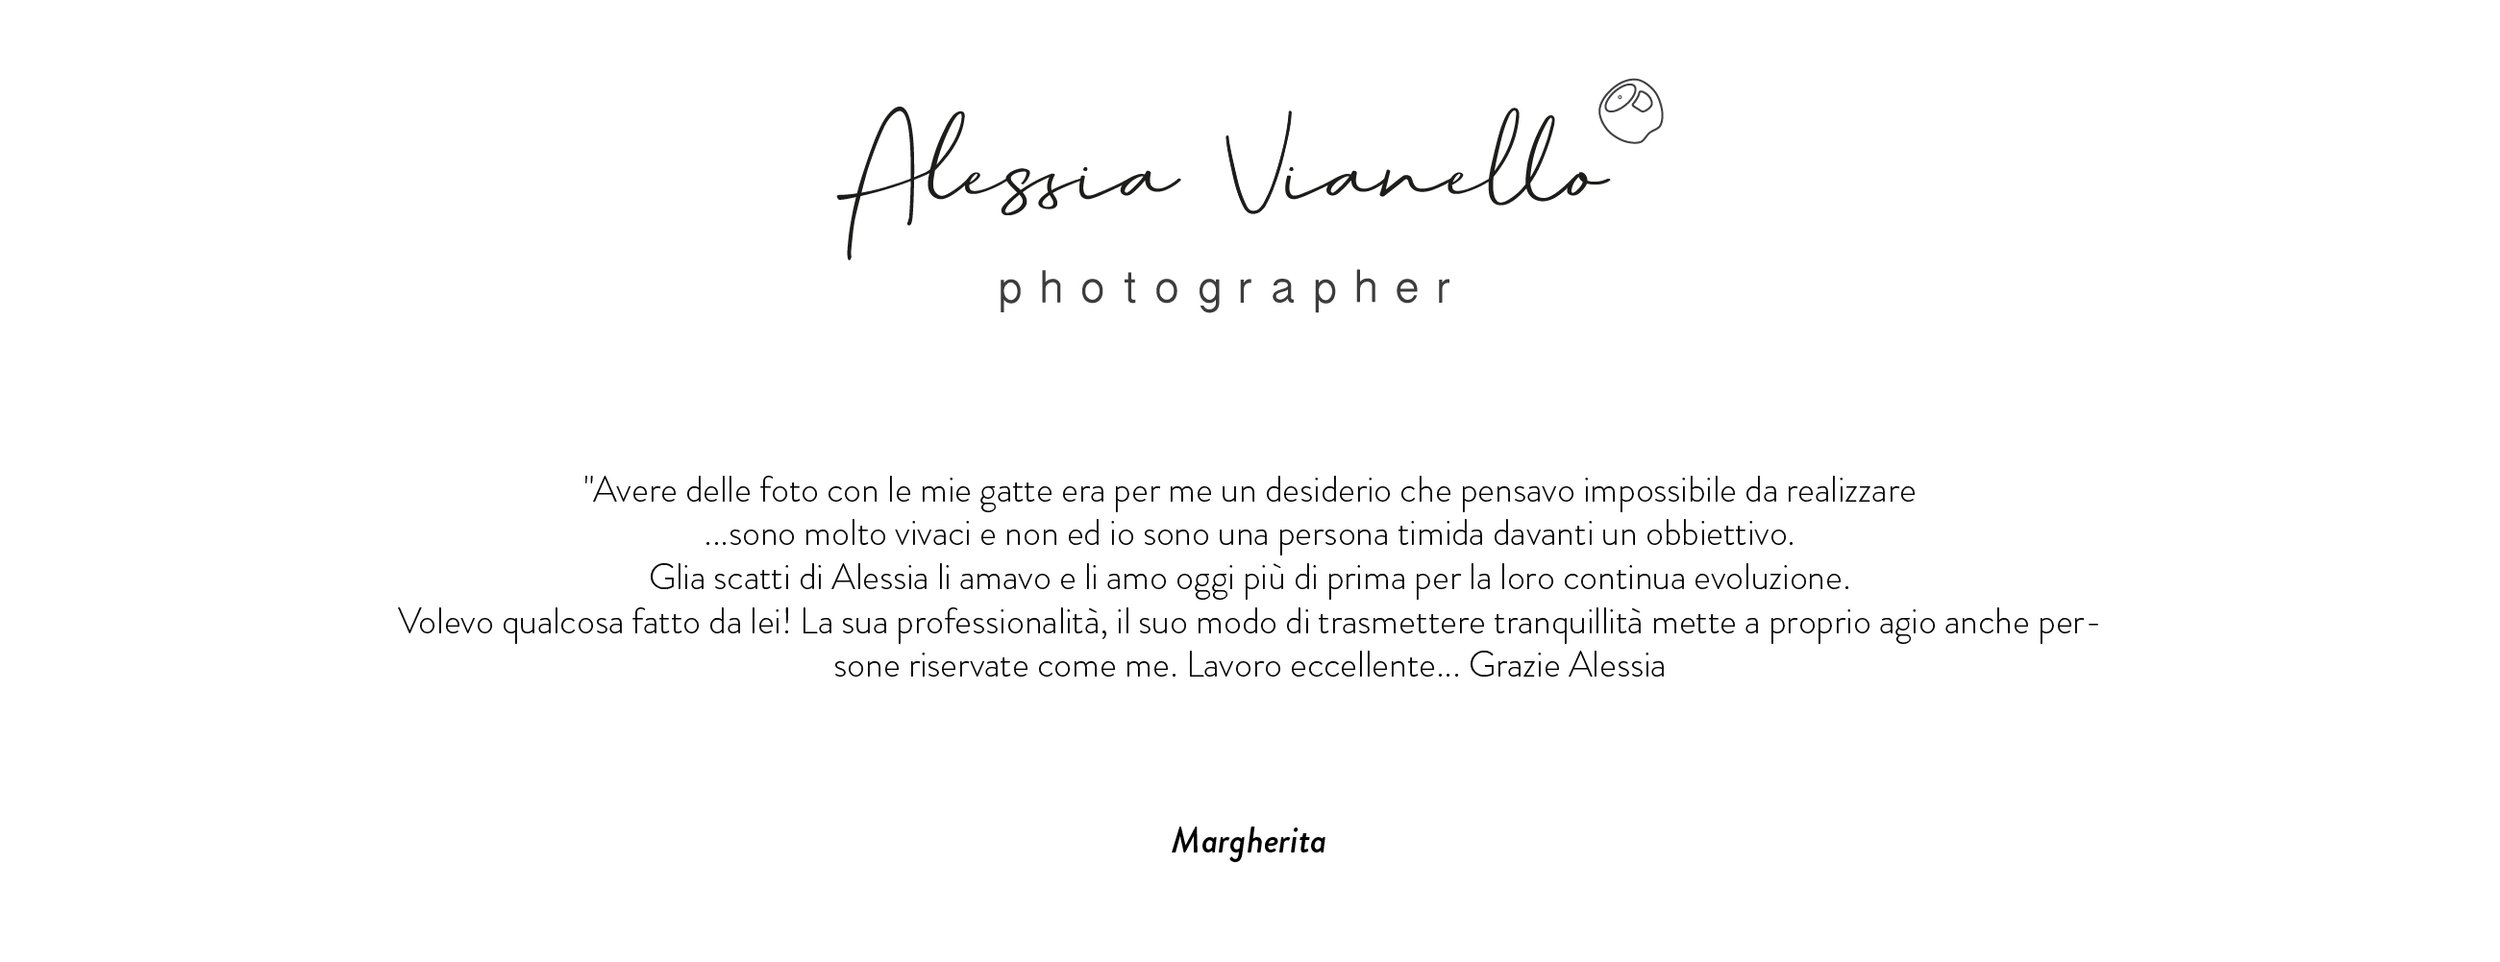 Alessia-Vianello_recensione_margherita.jpg